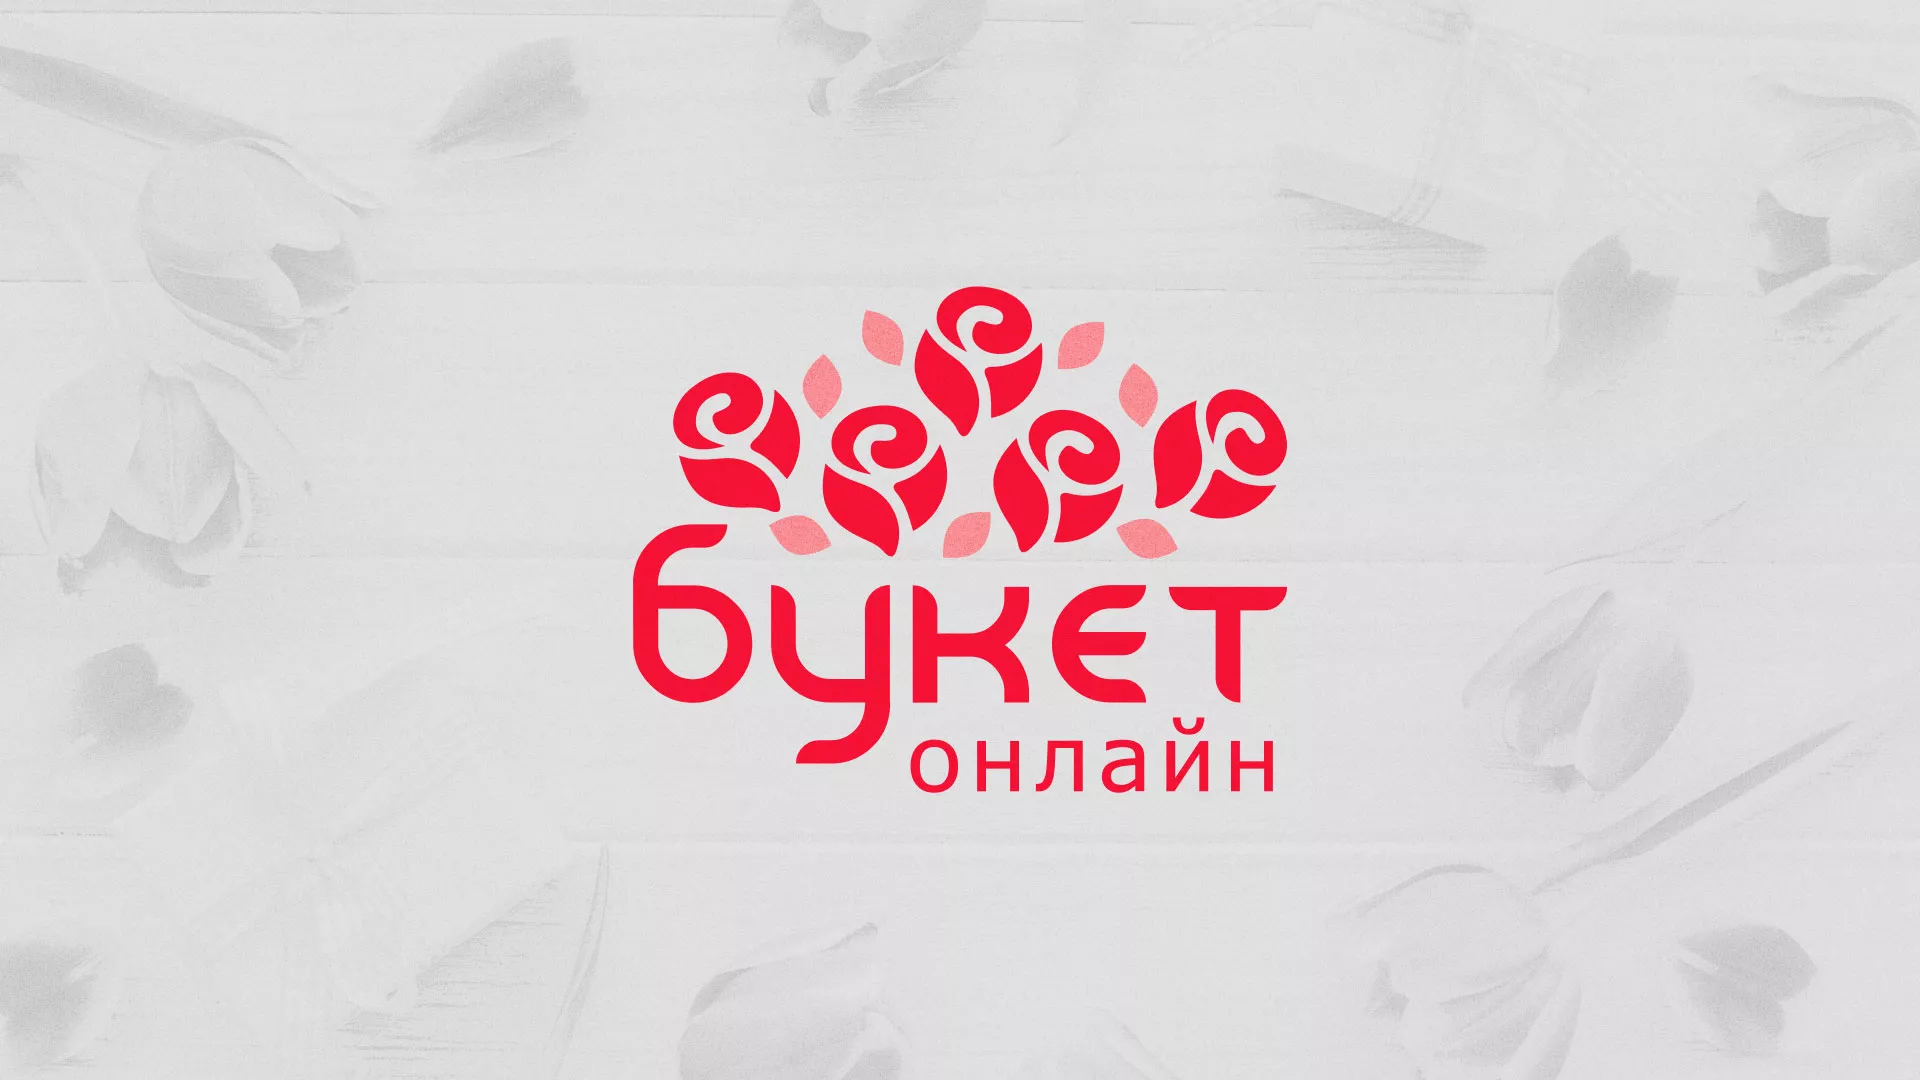 Создание интернет-магазина «Букет-онлайн» по цветам в Московском